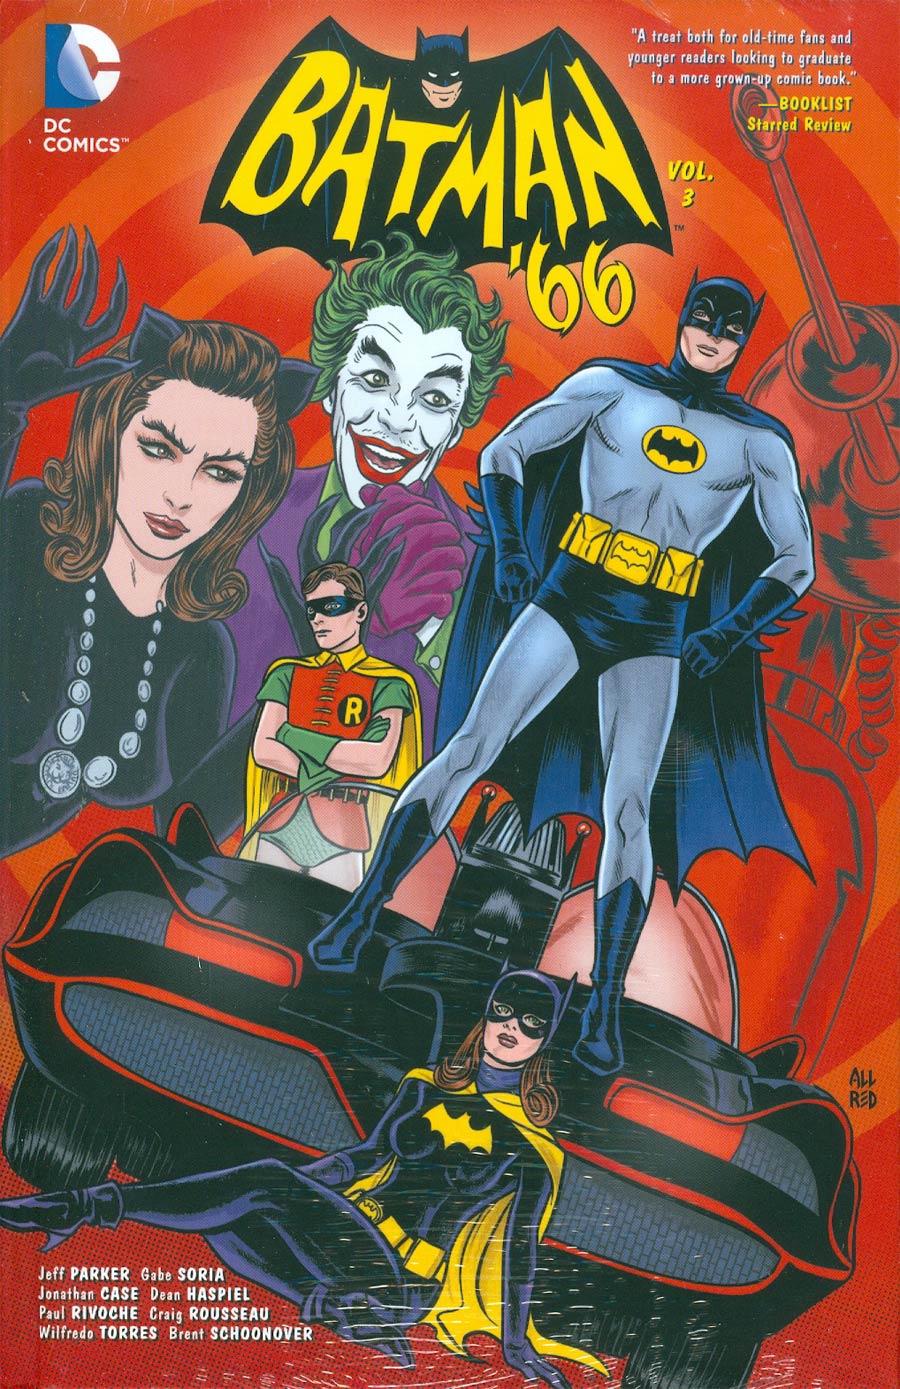 Batman 66 Vol 3 HC